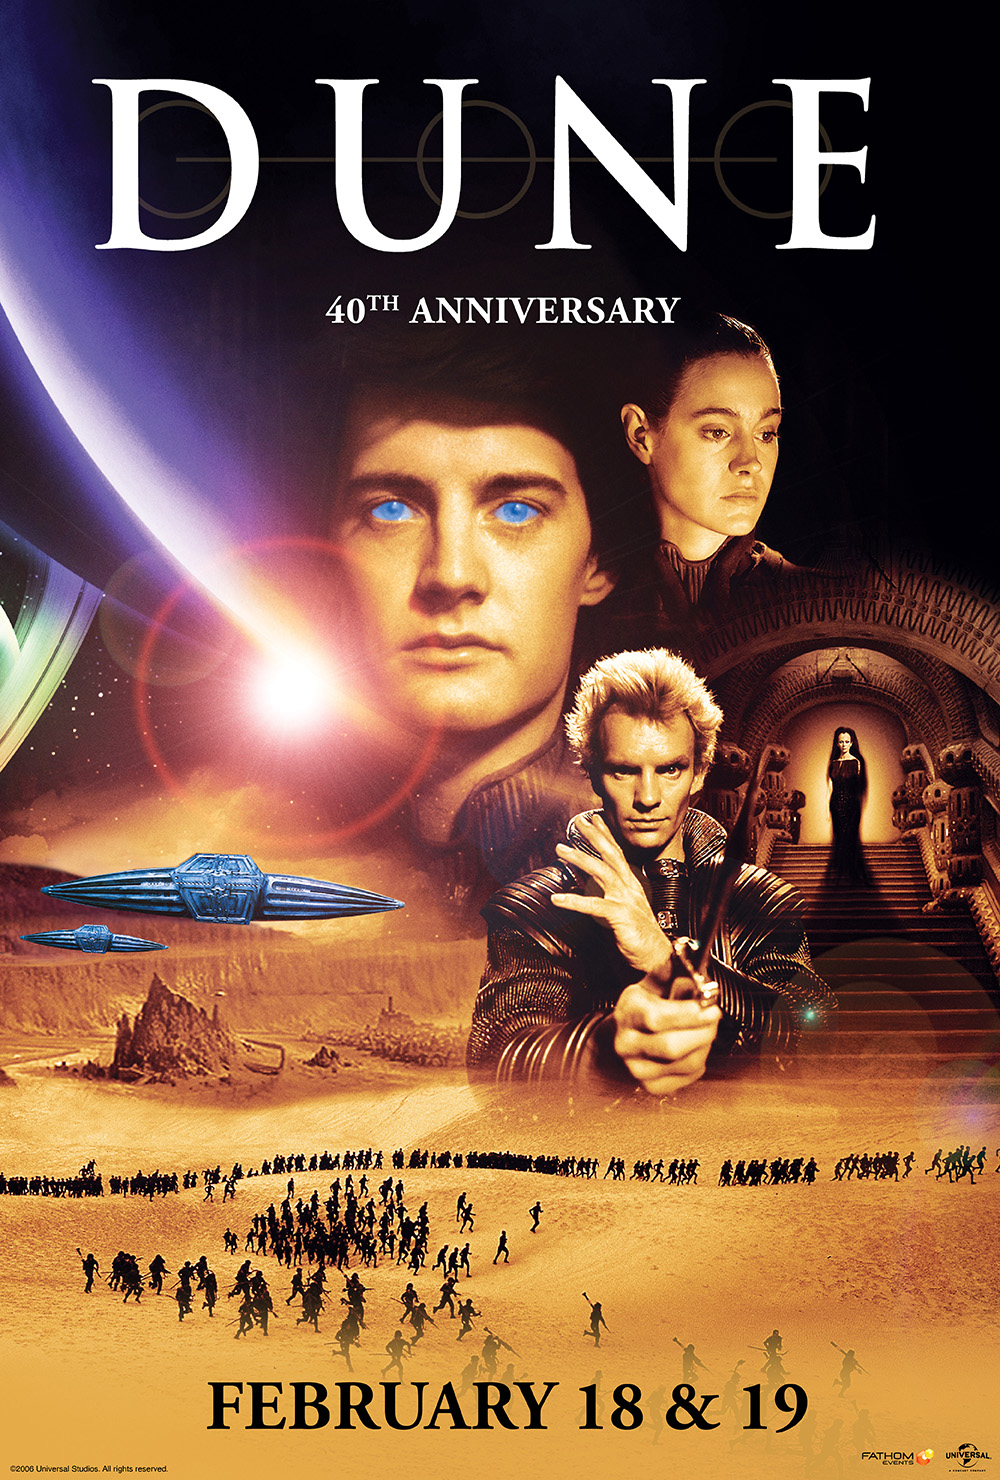 Dune 40th Anniversary